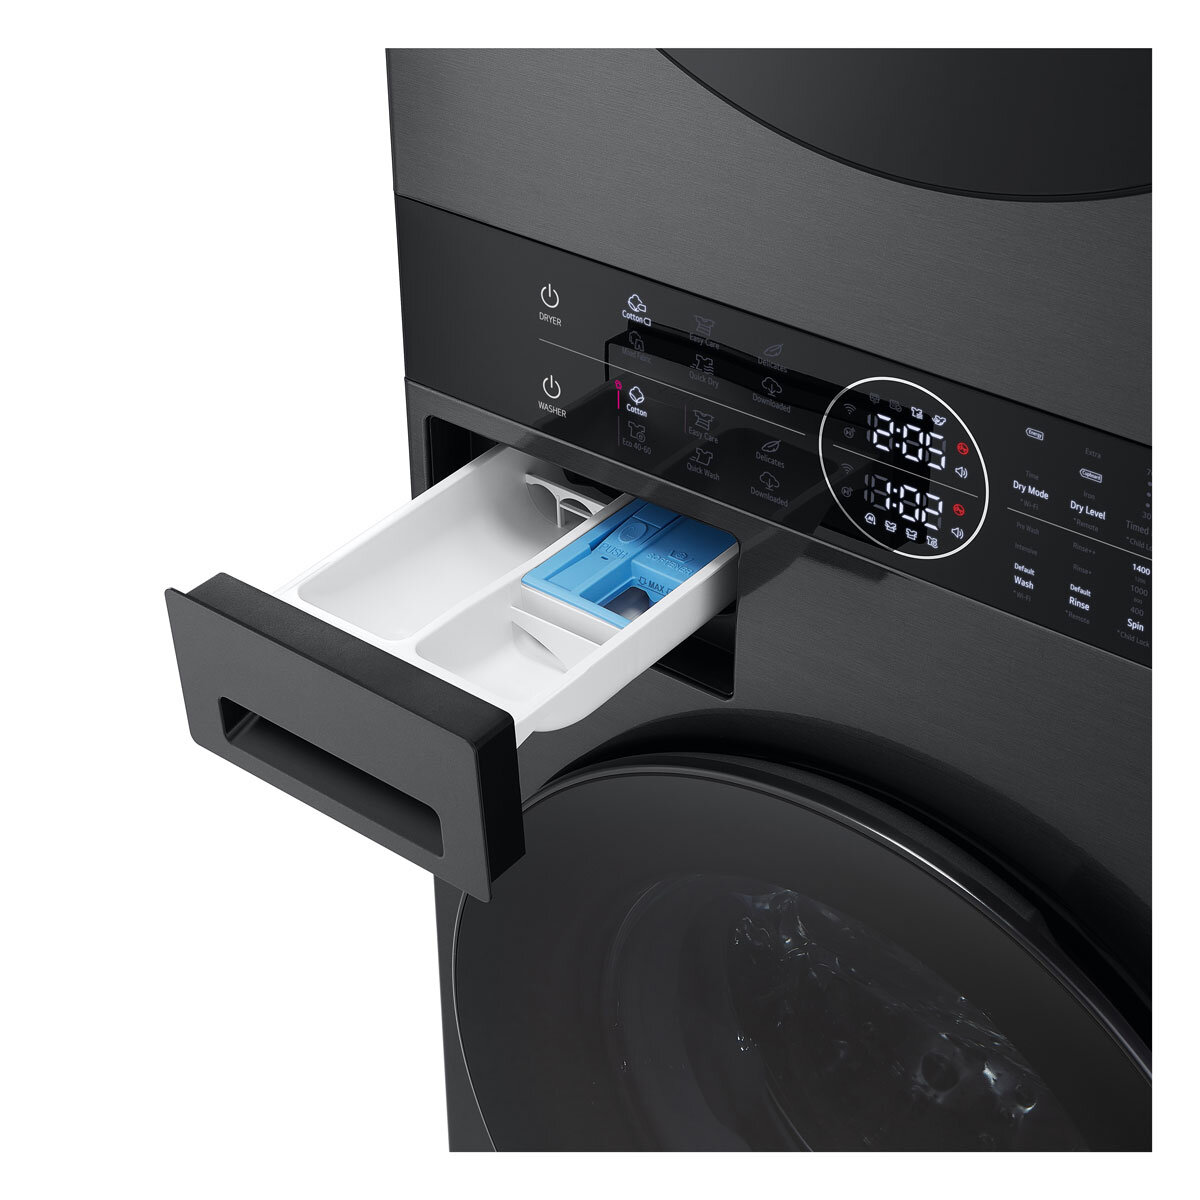 Detergent drawers LG WT1210BBTN1 10/8kg LG WashTower™